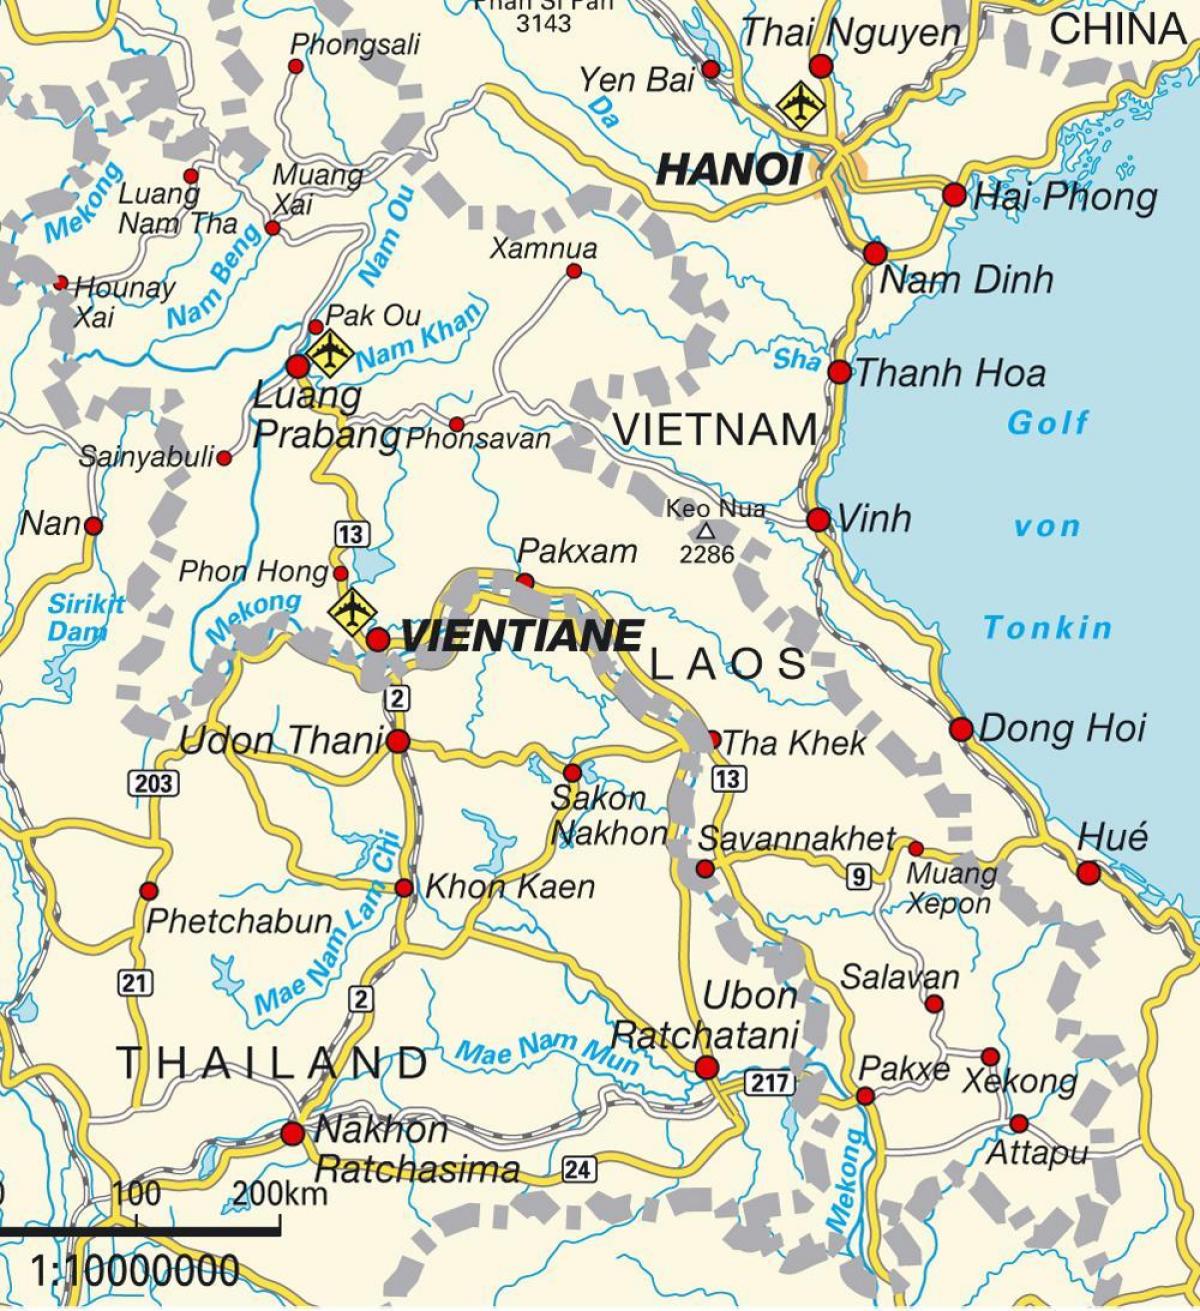 zračne luke Laos na karti